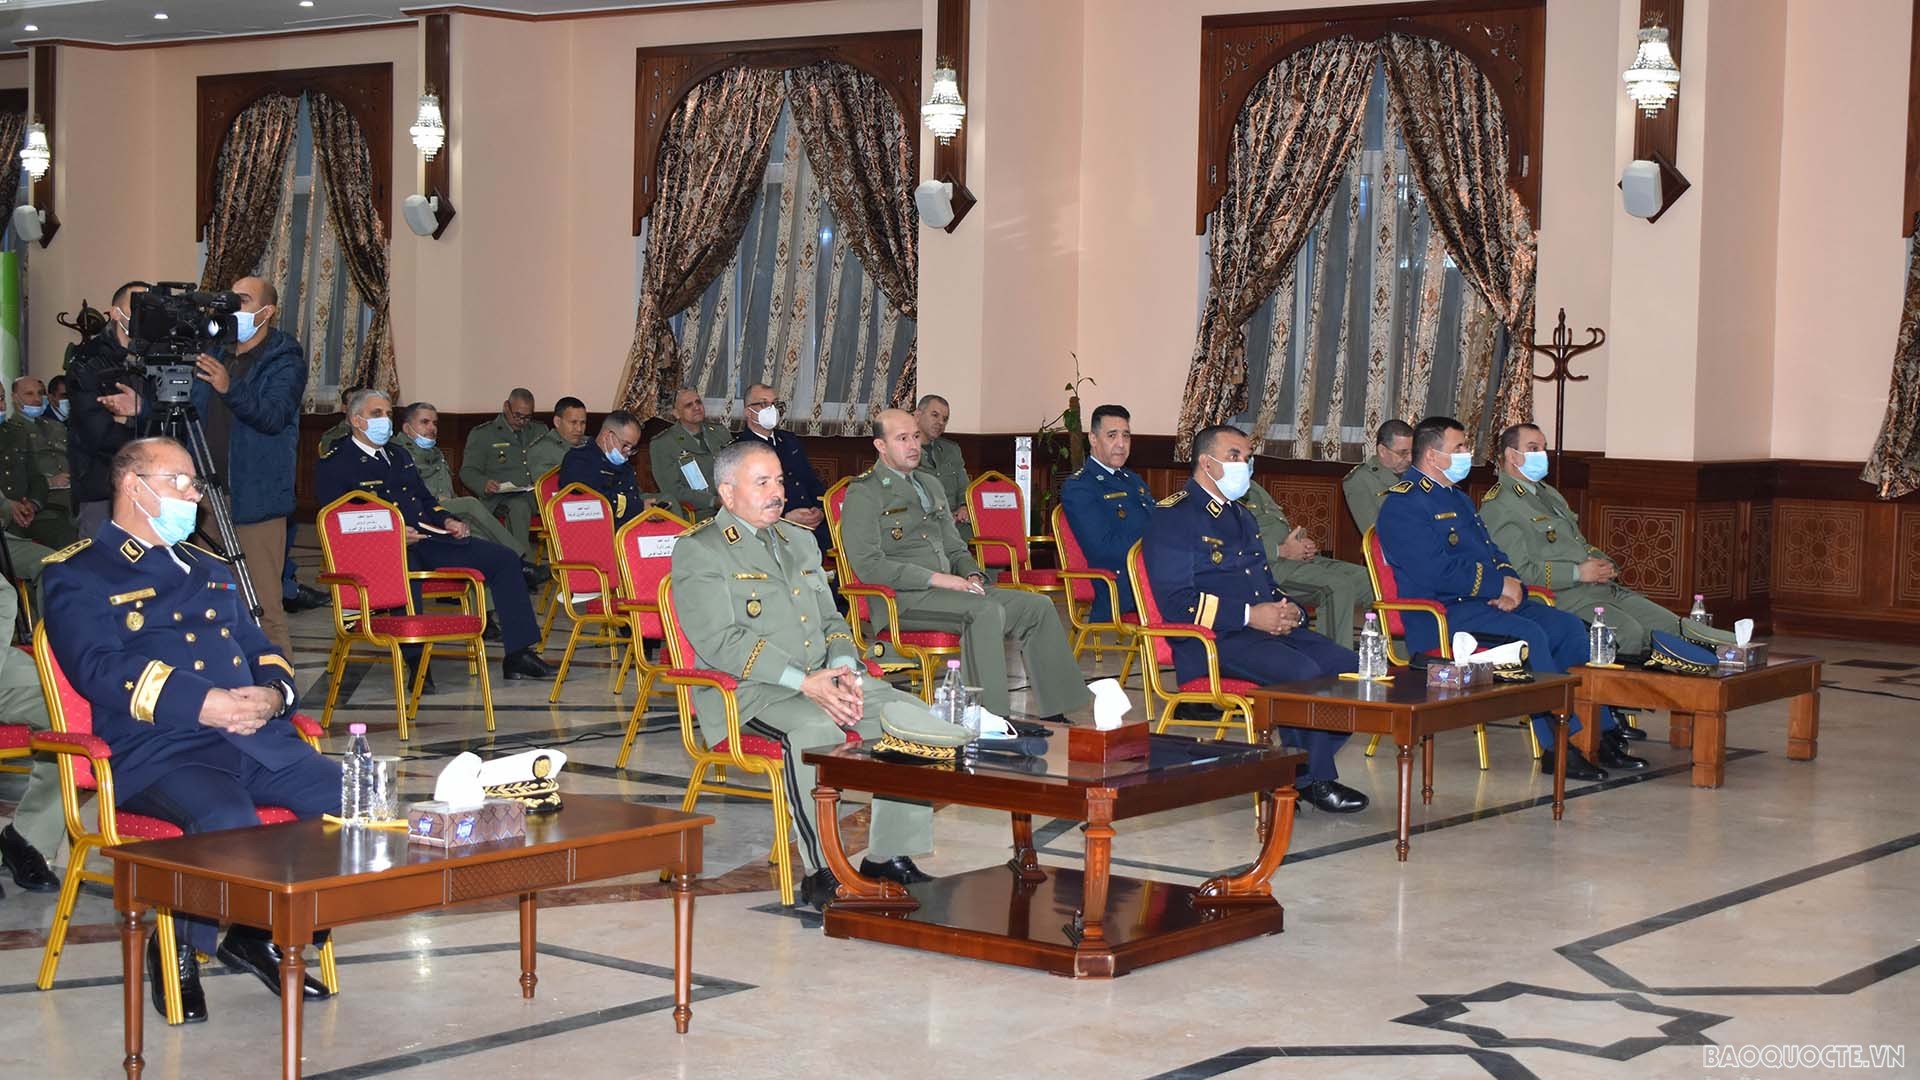 Tham dự tọa đàm có lãnh đạo trường Đại học chiến tranh Algeria cùng tập thể lãnh đạo các khoa, phòng, ban, các sĩ quan, học viên.